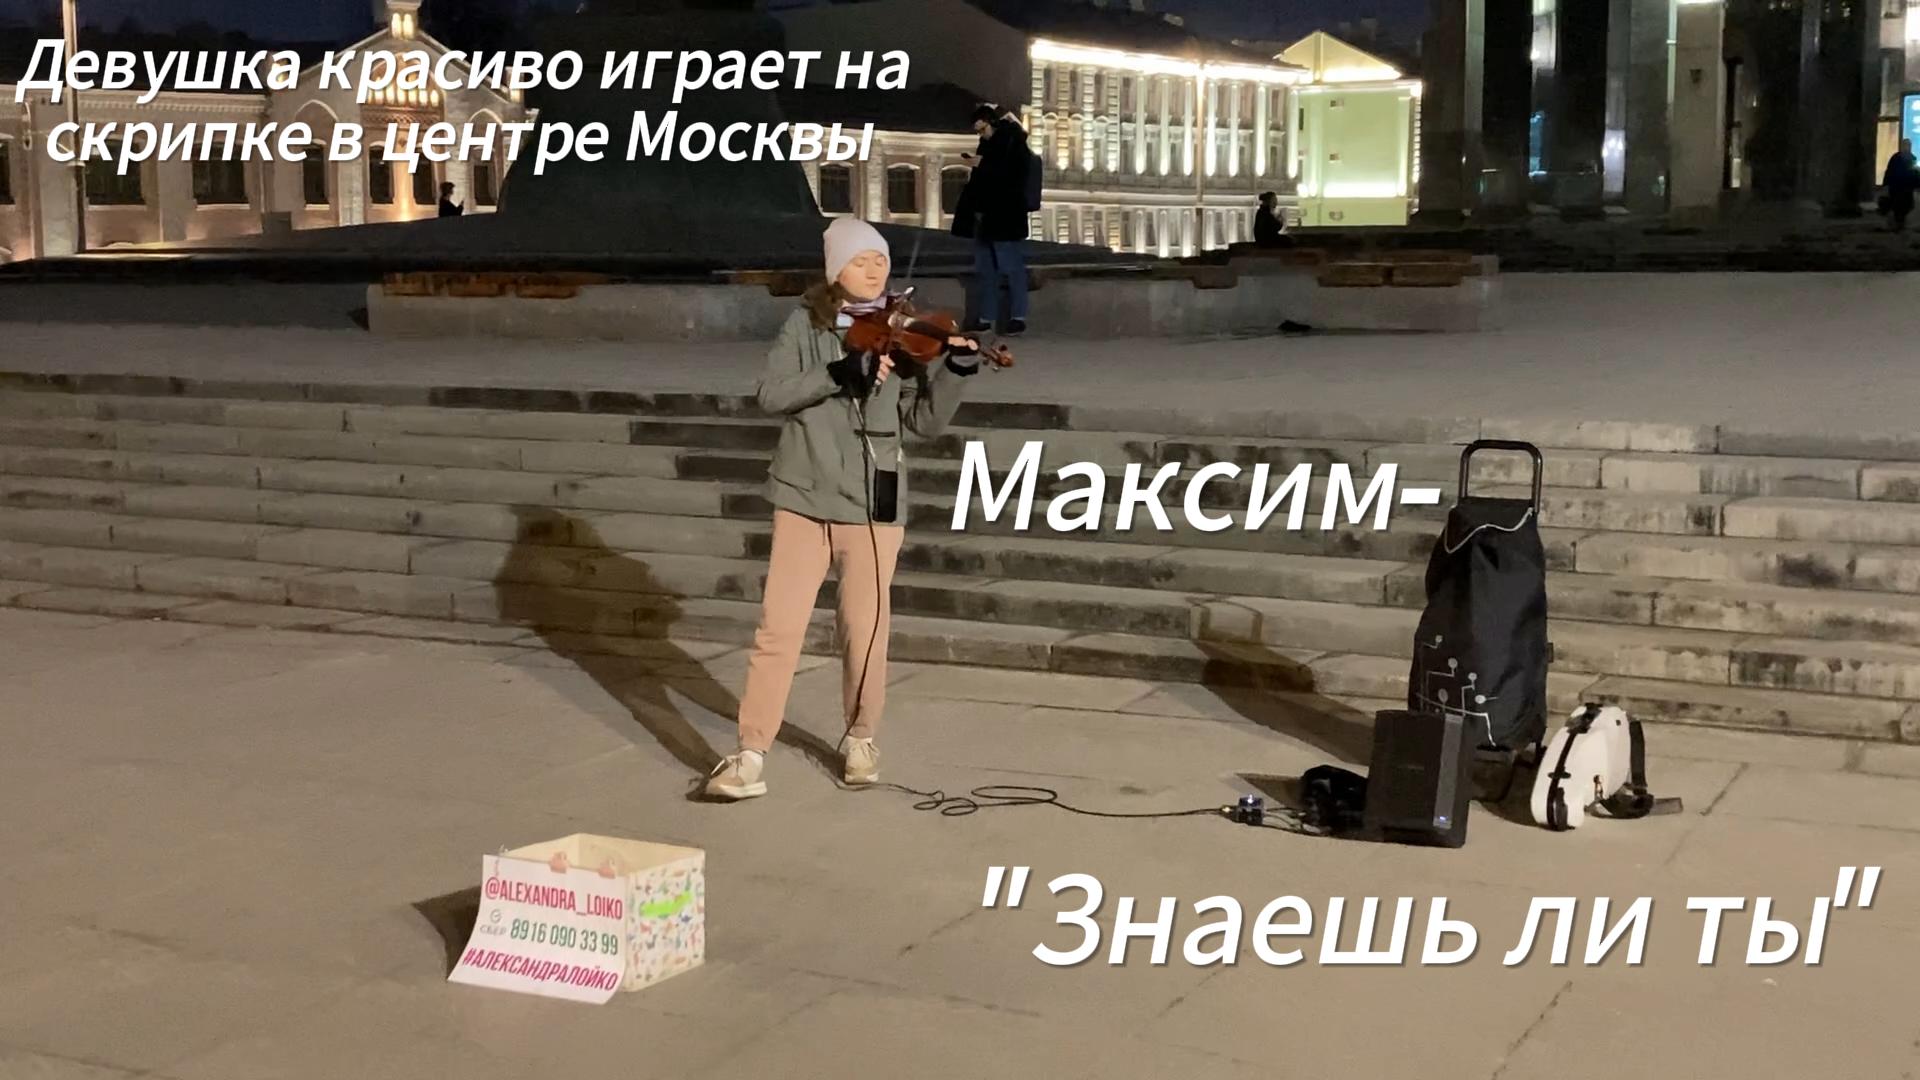 Девушка красиво играет на скрипке композицию Максим - "Знаешь ли ты".